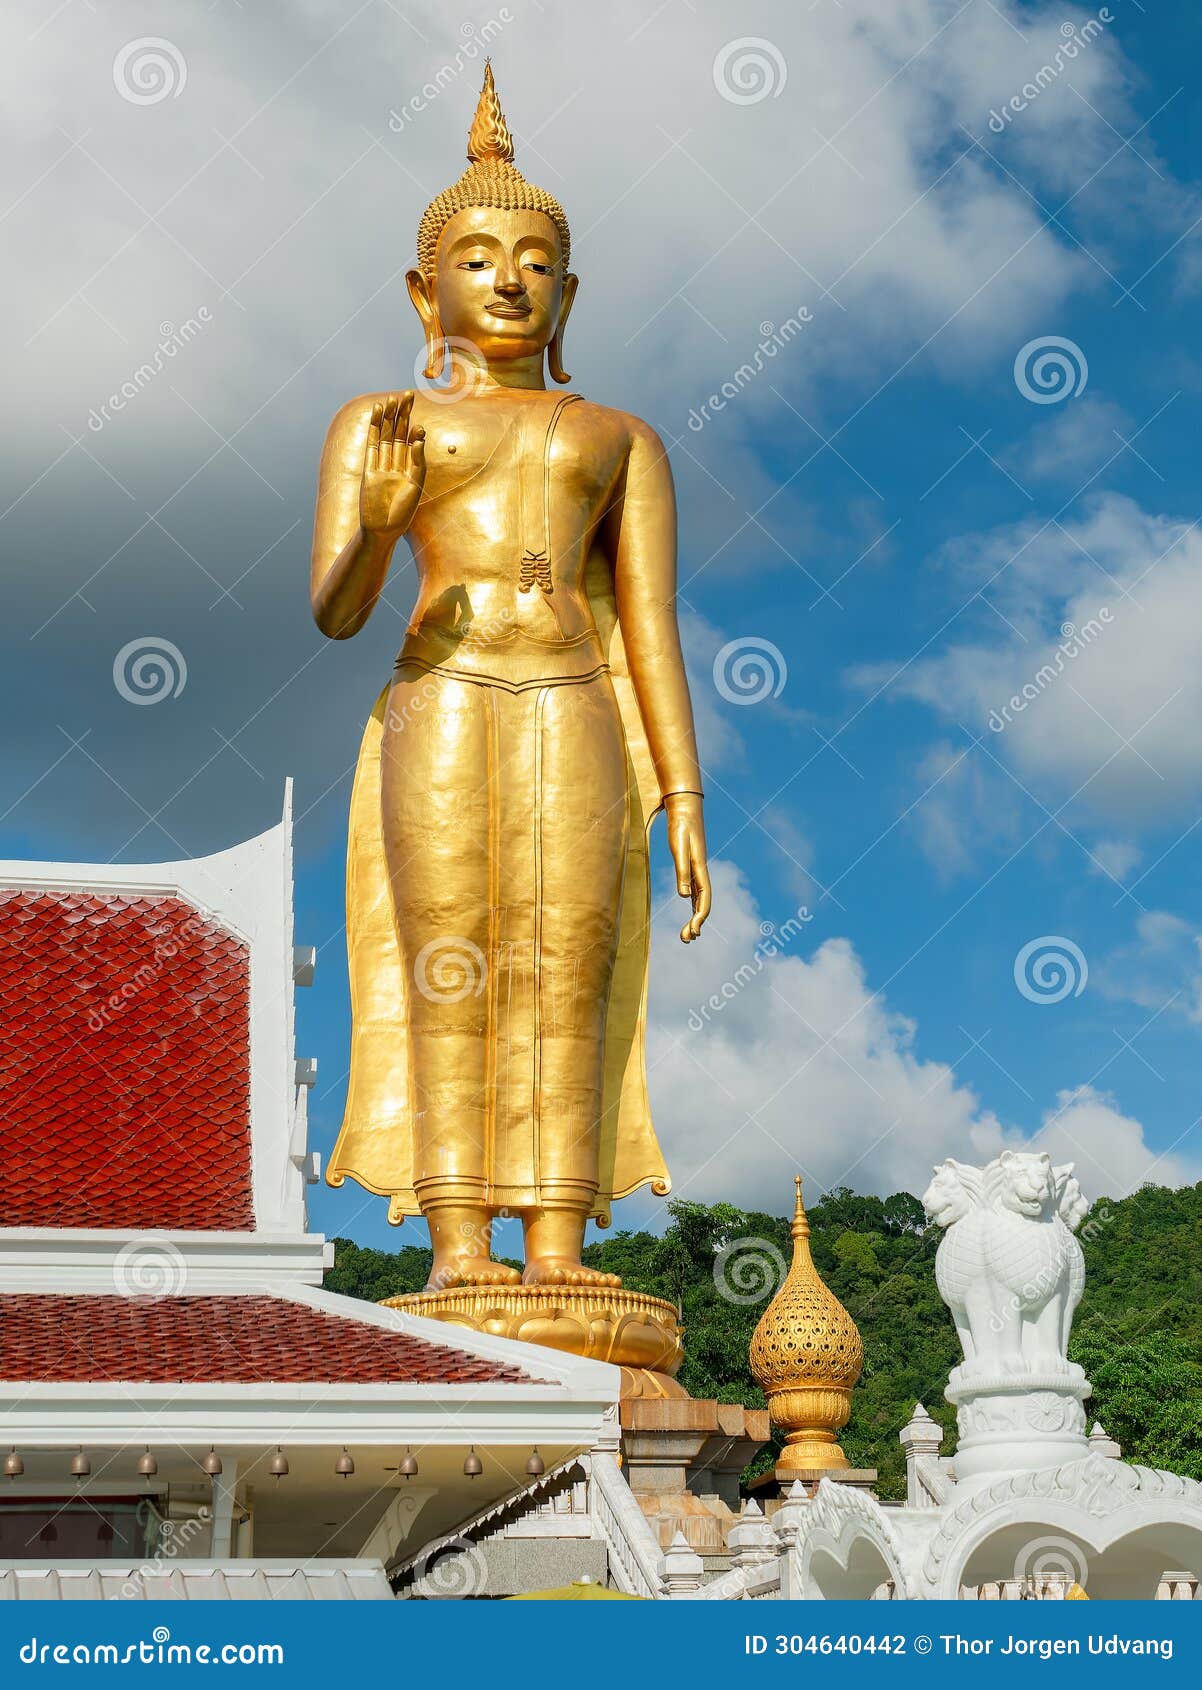 golden standing buddha in hat yai, thailand